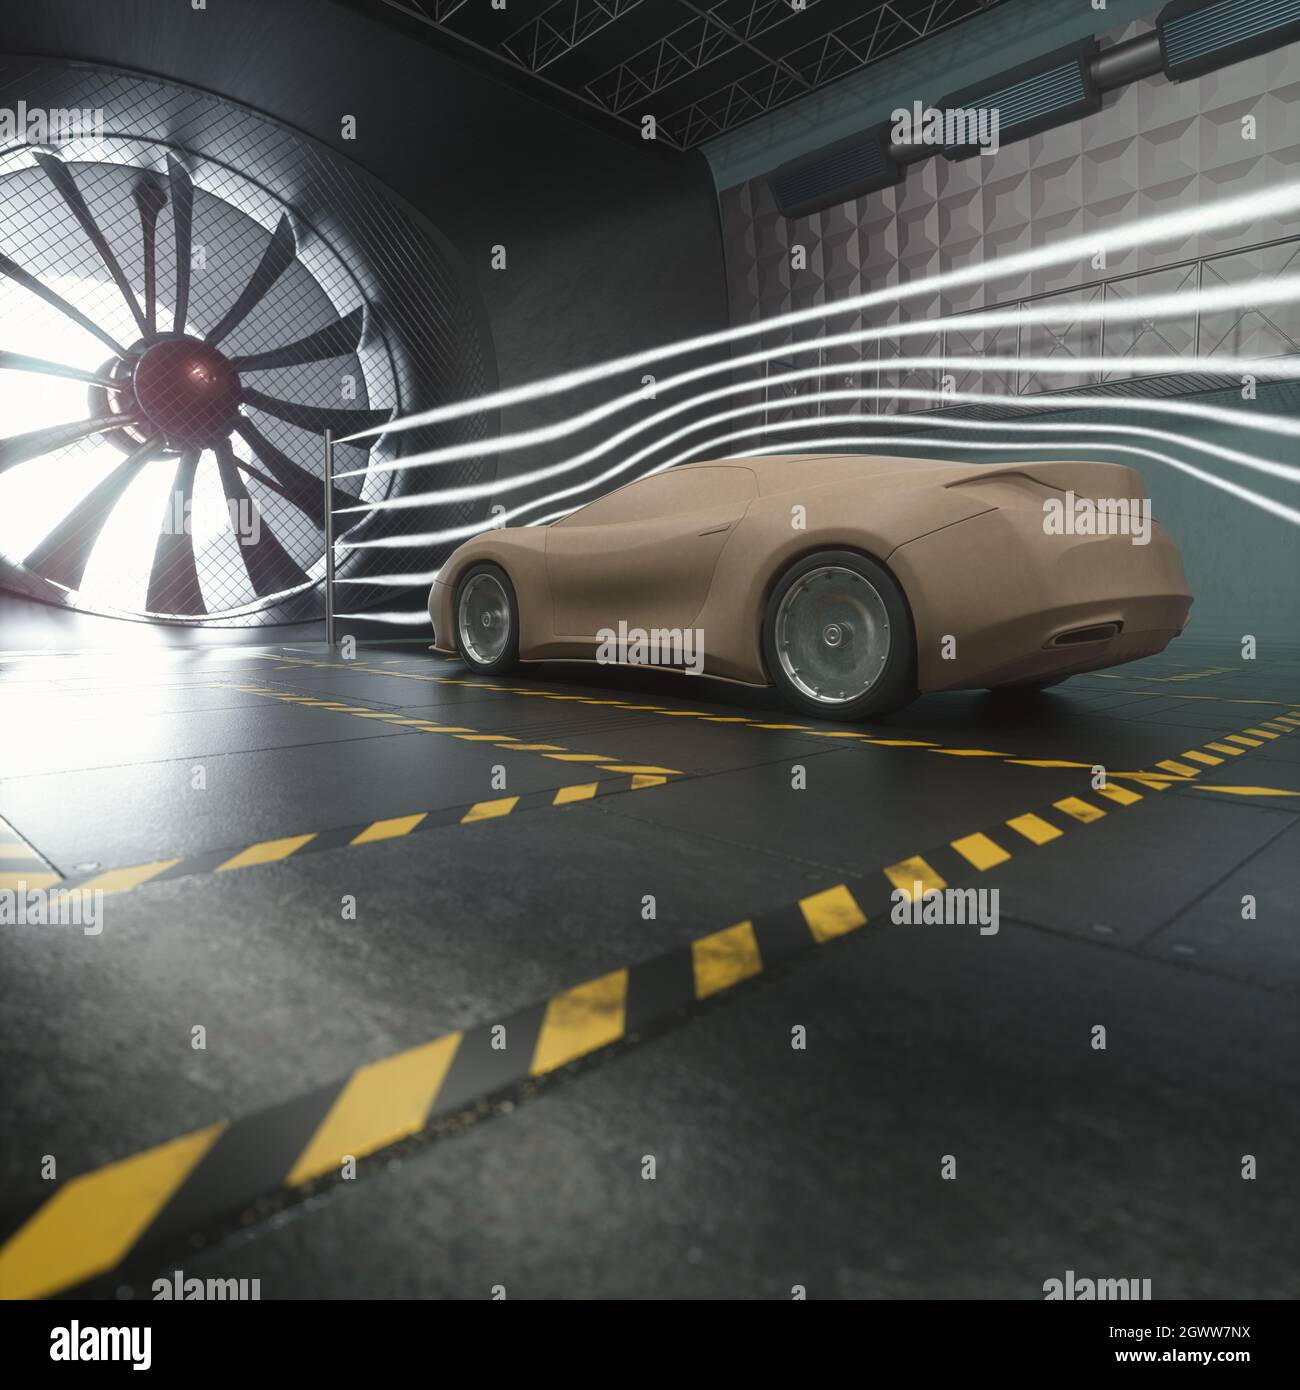 3D Ilustración de un deportivo imaginario. Prototipo conceptual dentro del túnel aerodinámico. Foto de stock